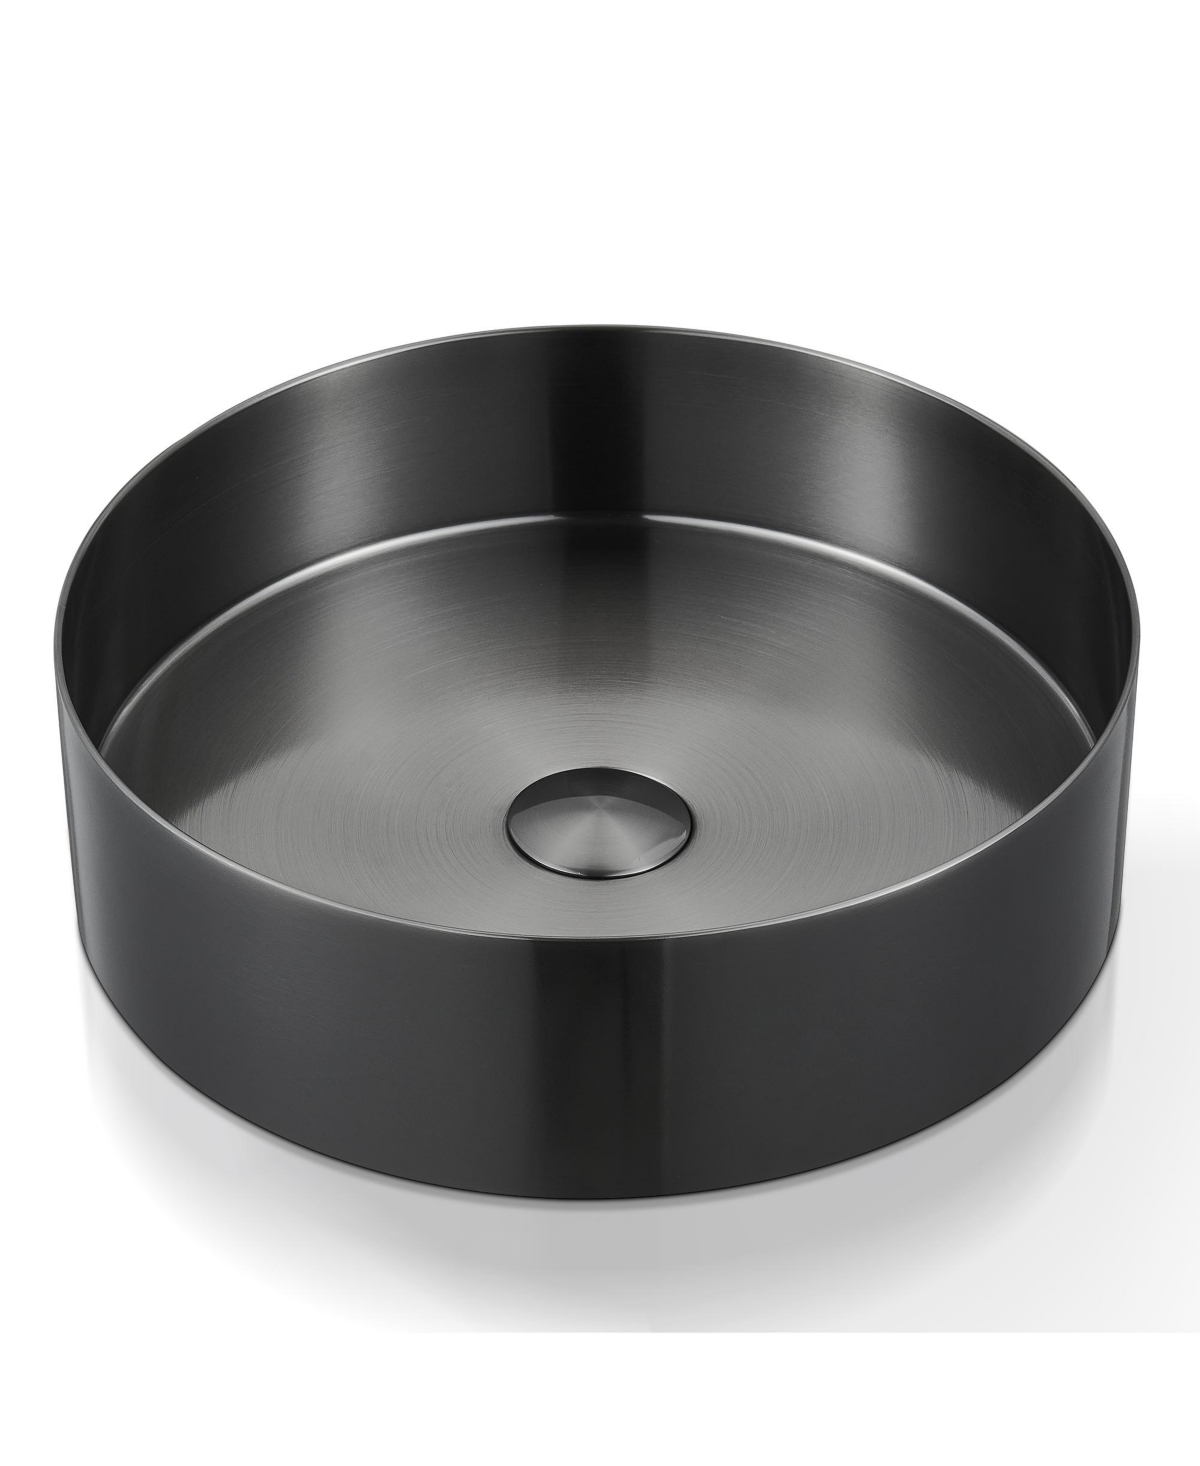 14.9'' Stainless Steel Circular Vessel Bathroom Sink - Black